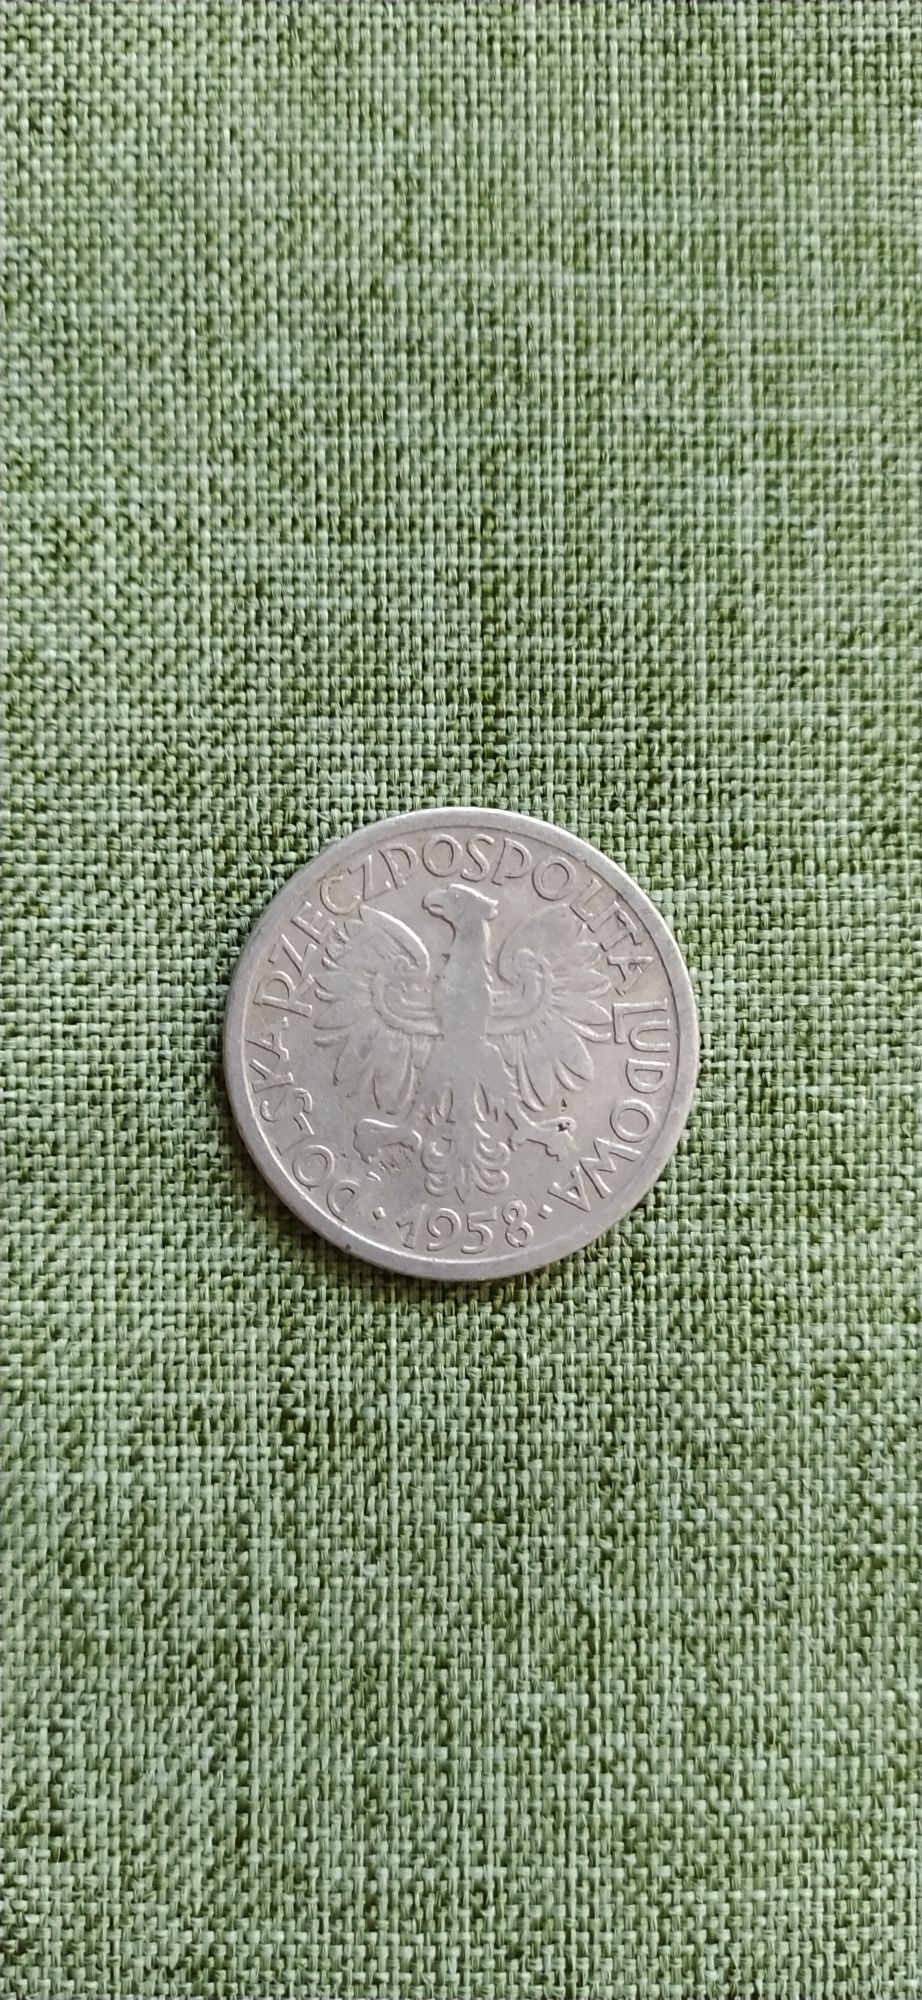 Moneta 2 złote 1958 rok